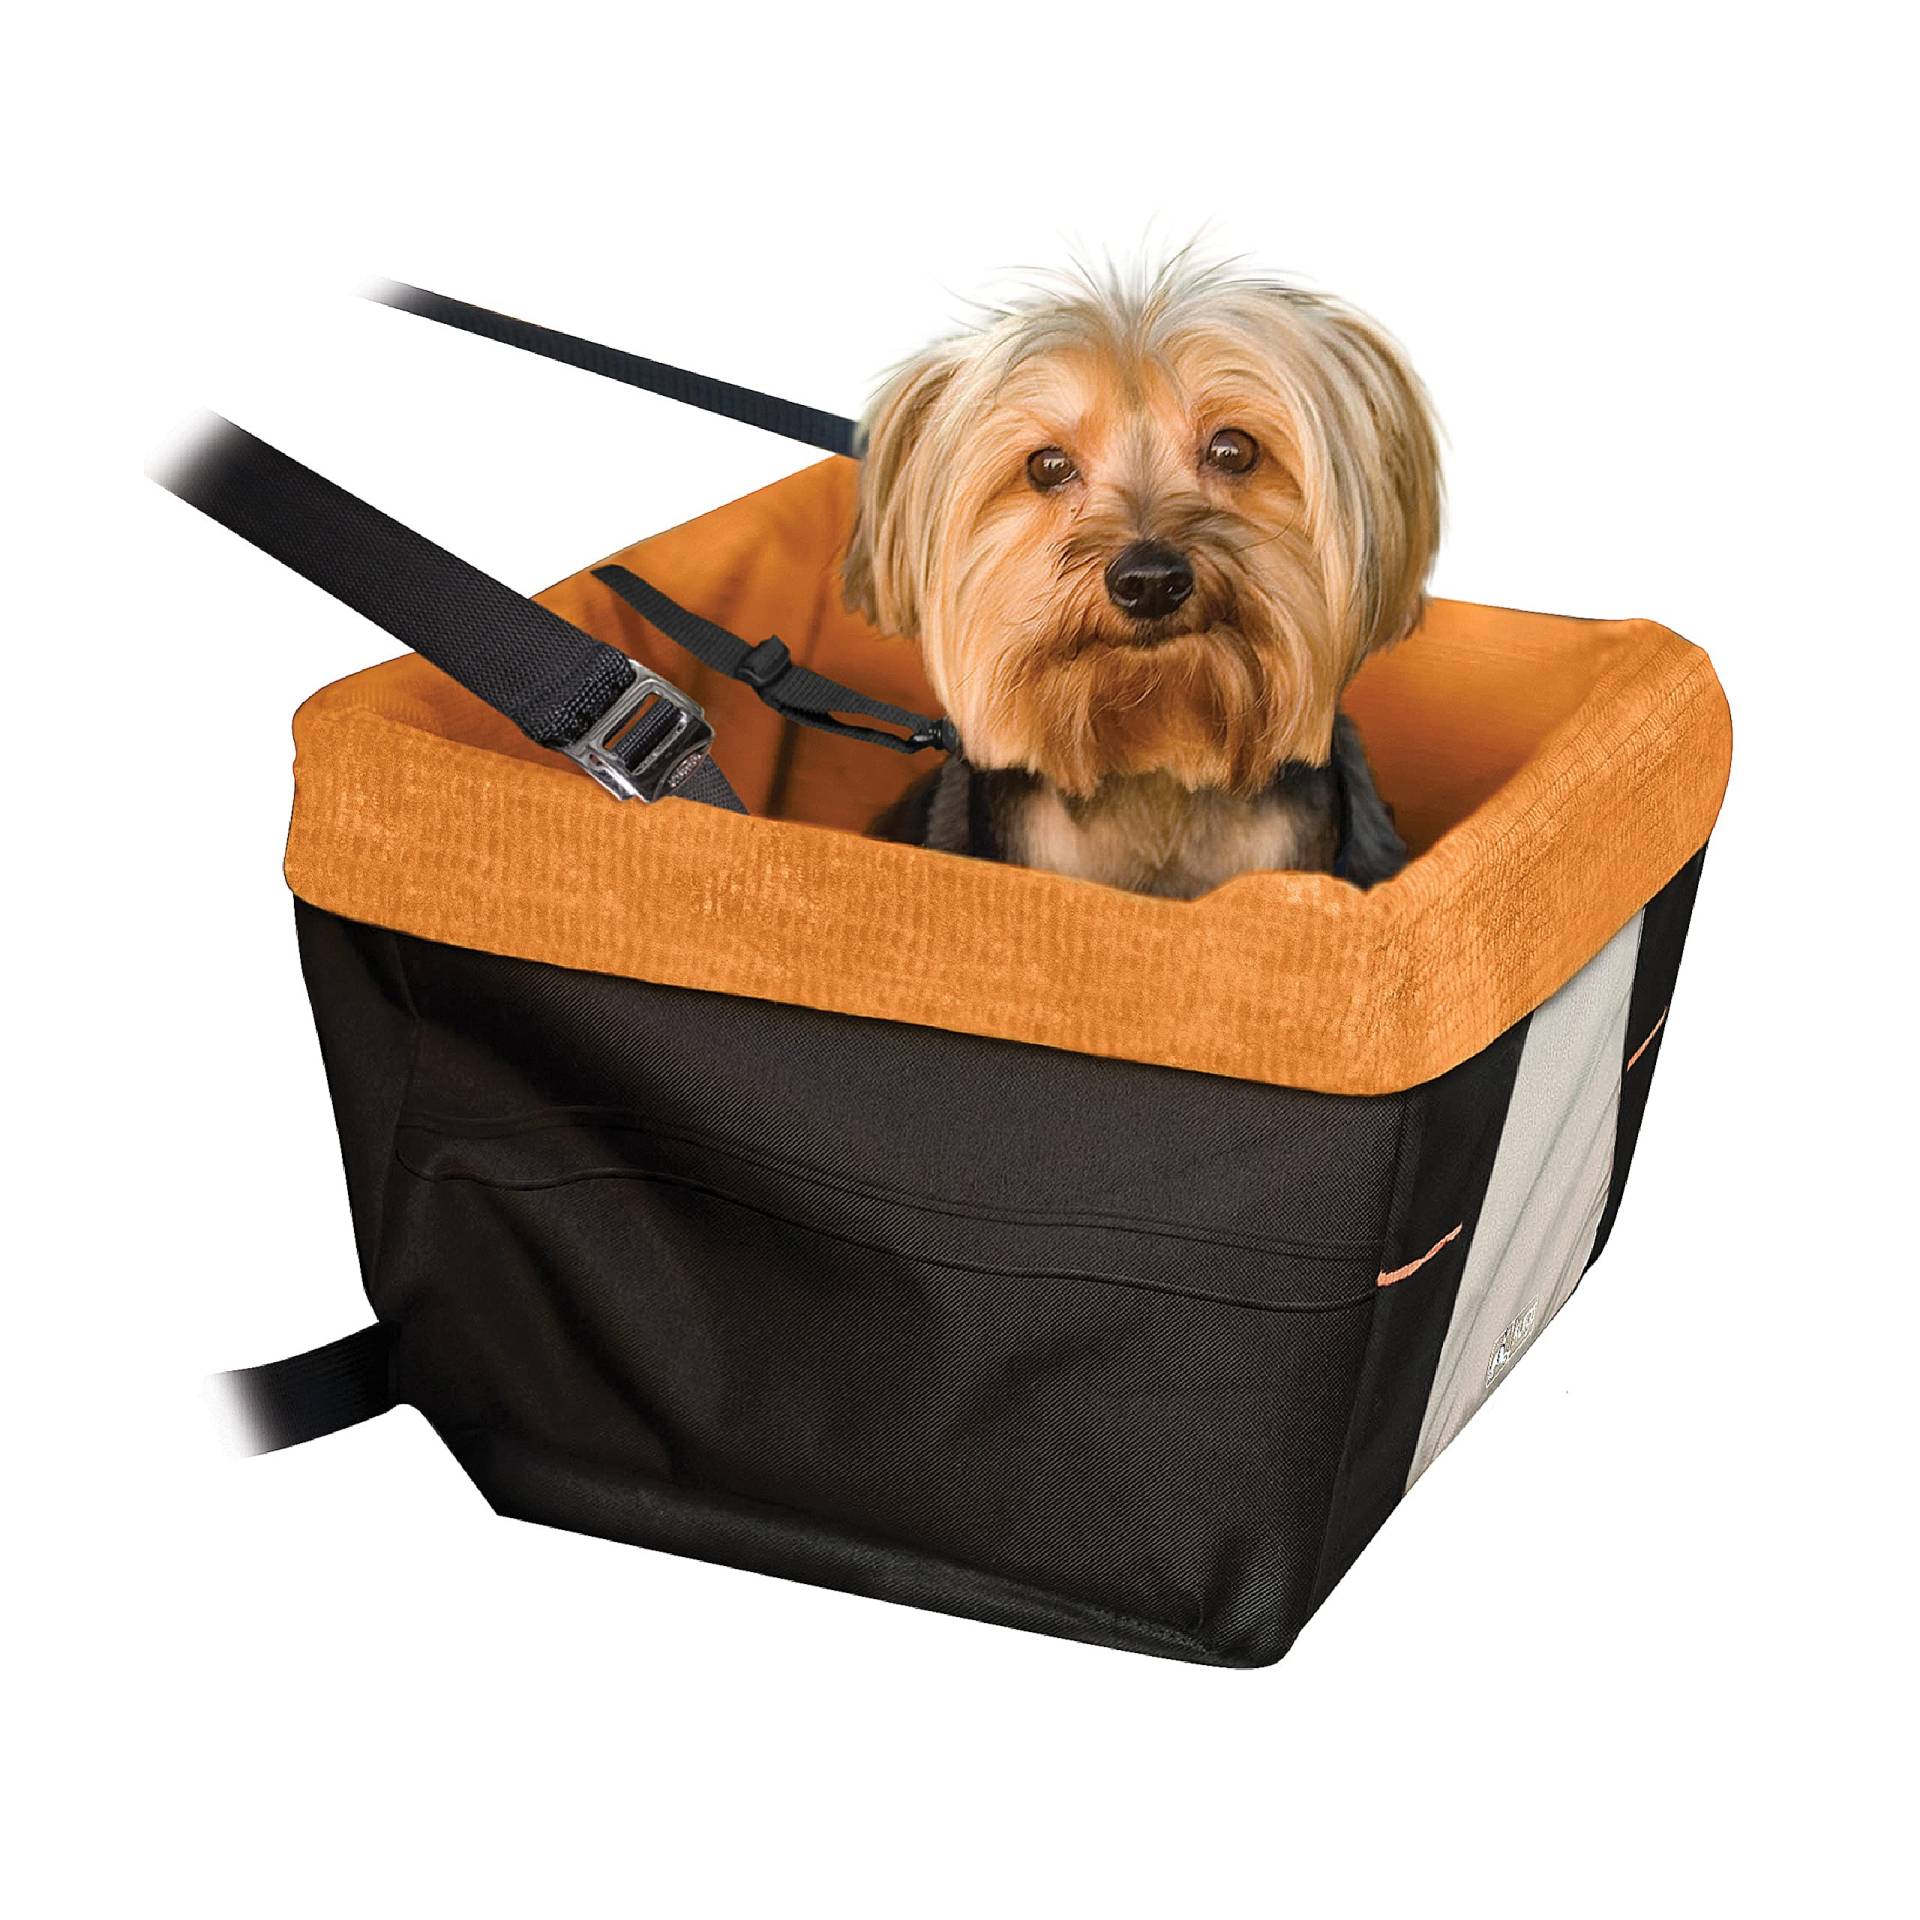 Kurgo Skybox Hunde-Autositz, Sitzerhöhung für Hunde, Einfache Montage, Für Haustiere bis zu 9 kg empfohlen, Orange/Schwarz, K00044, schwarz/orange, Up to 25 lbs von Kurgo